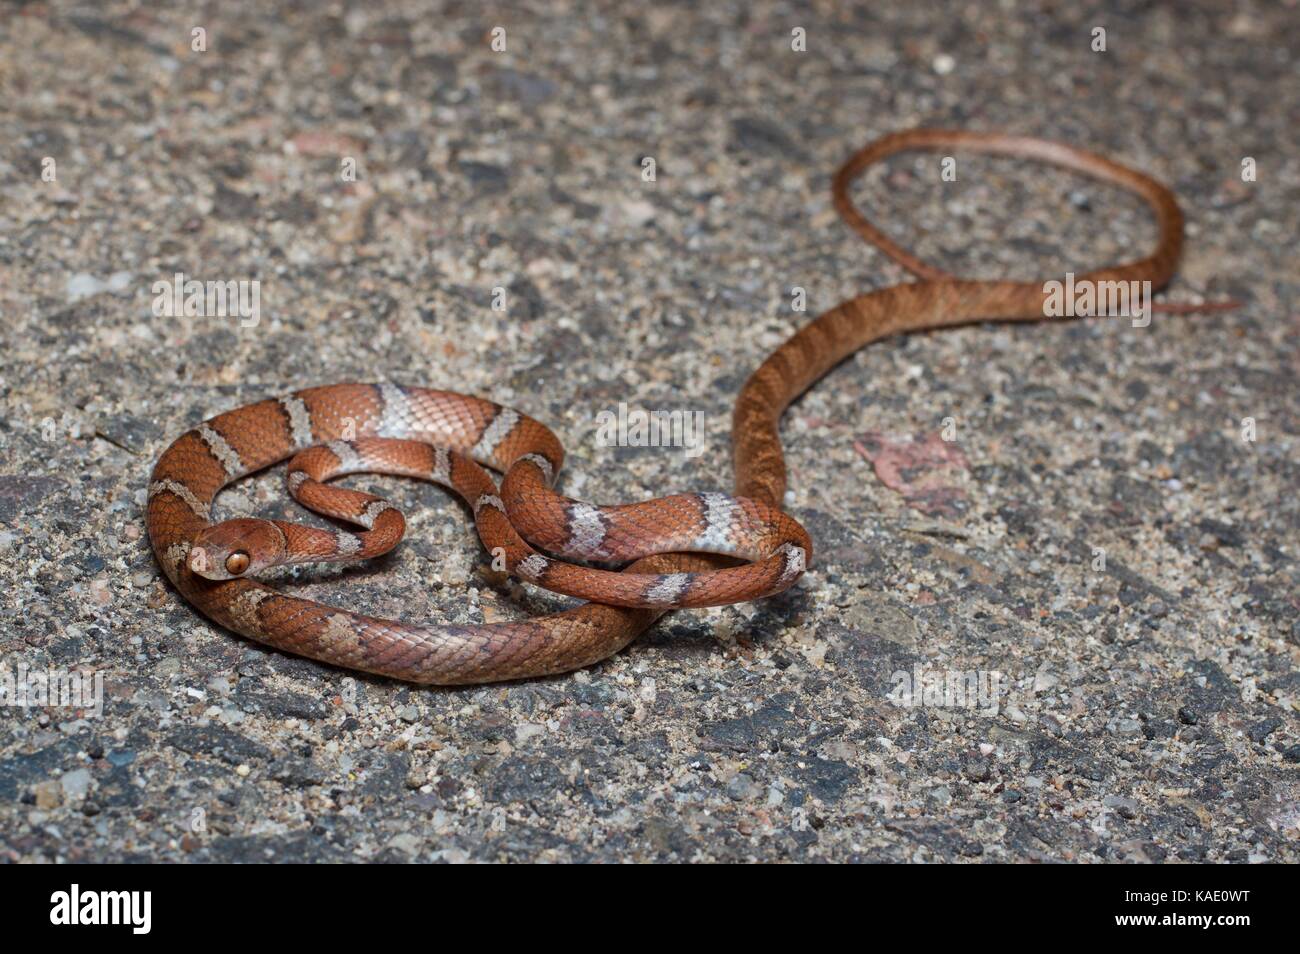 Una serpiente de árbol centroamericana (Imantodes gemdescuatus) en un camino pavimentado por la noche cerca de Álamos, Sonora México Foto de stock